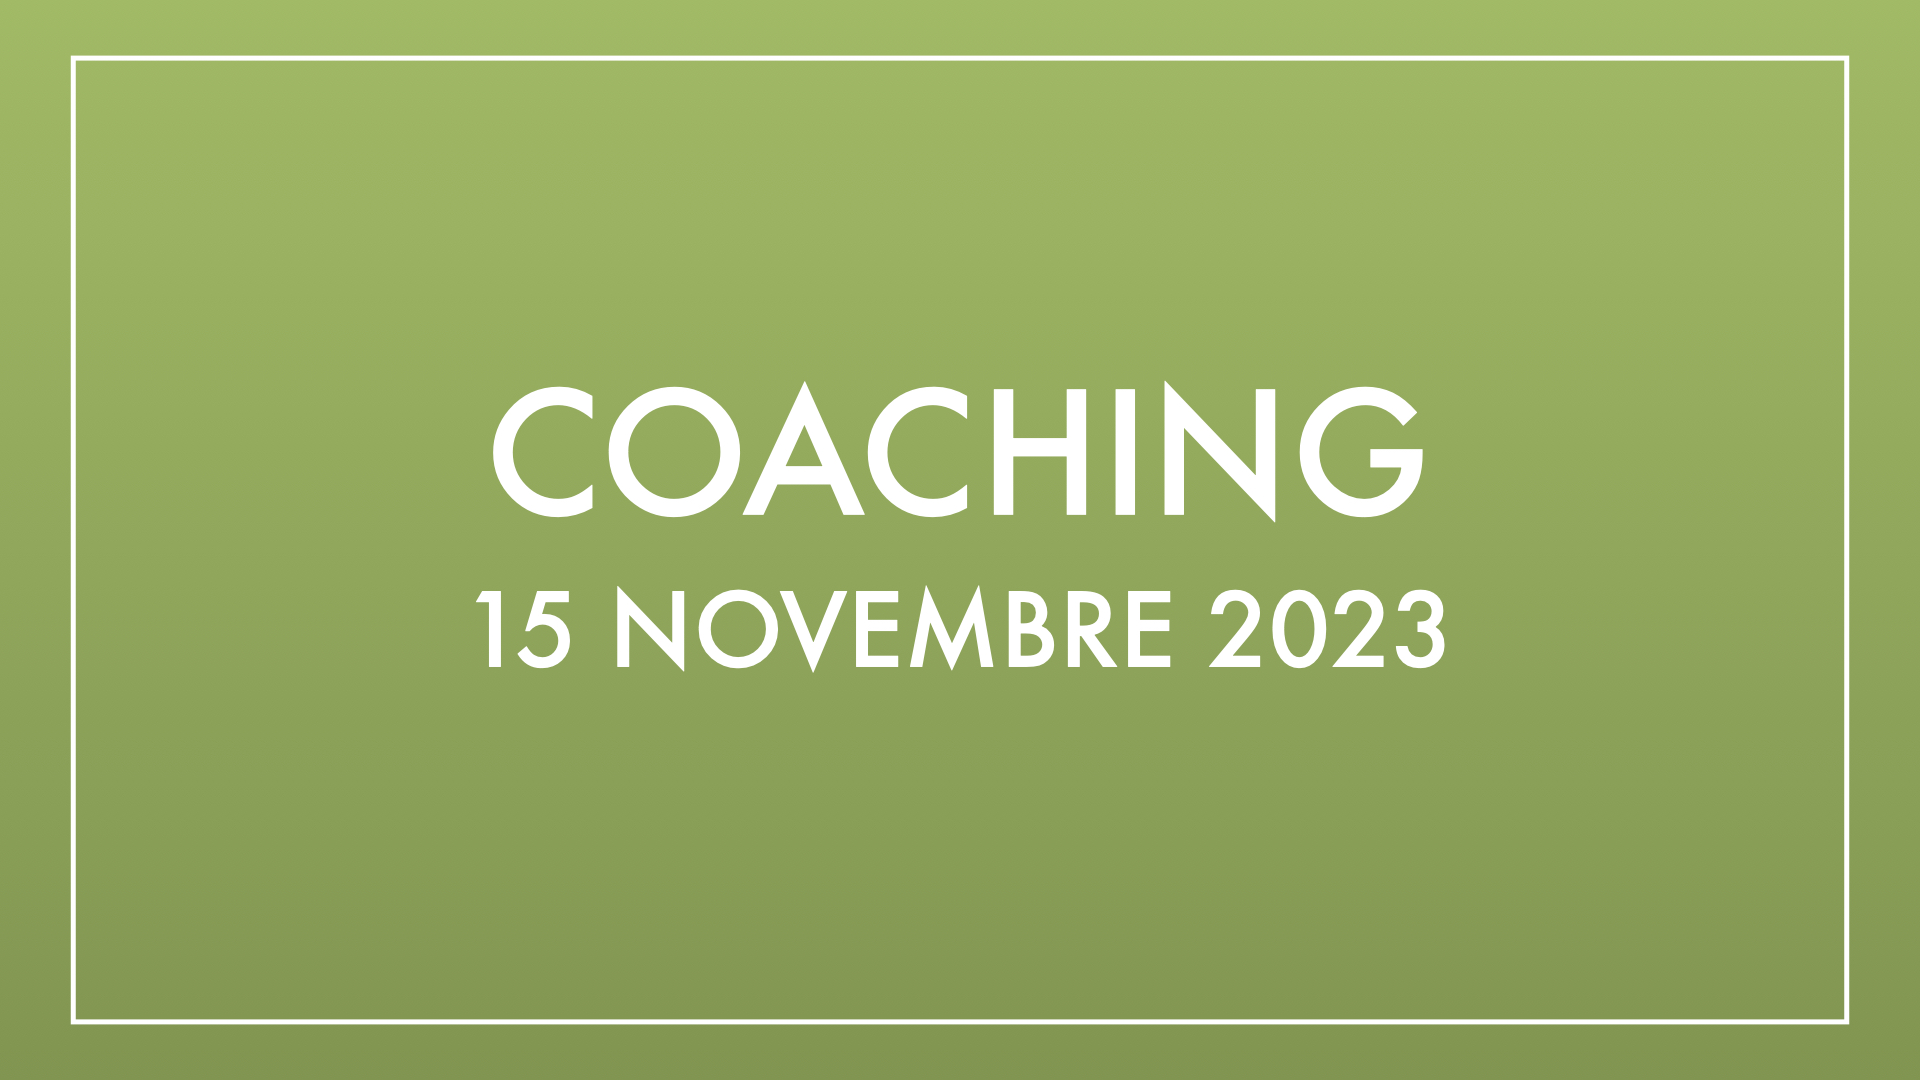 Coaching 15 novembre 2023